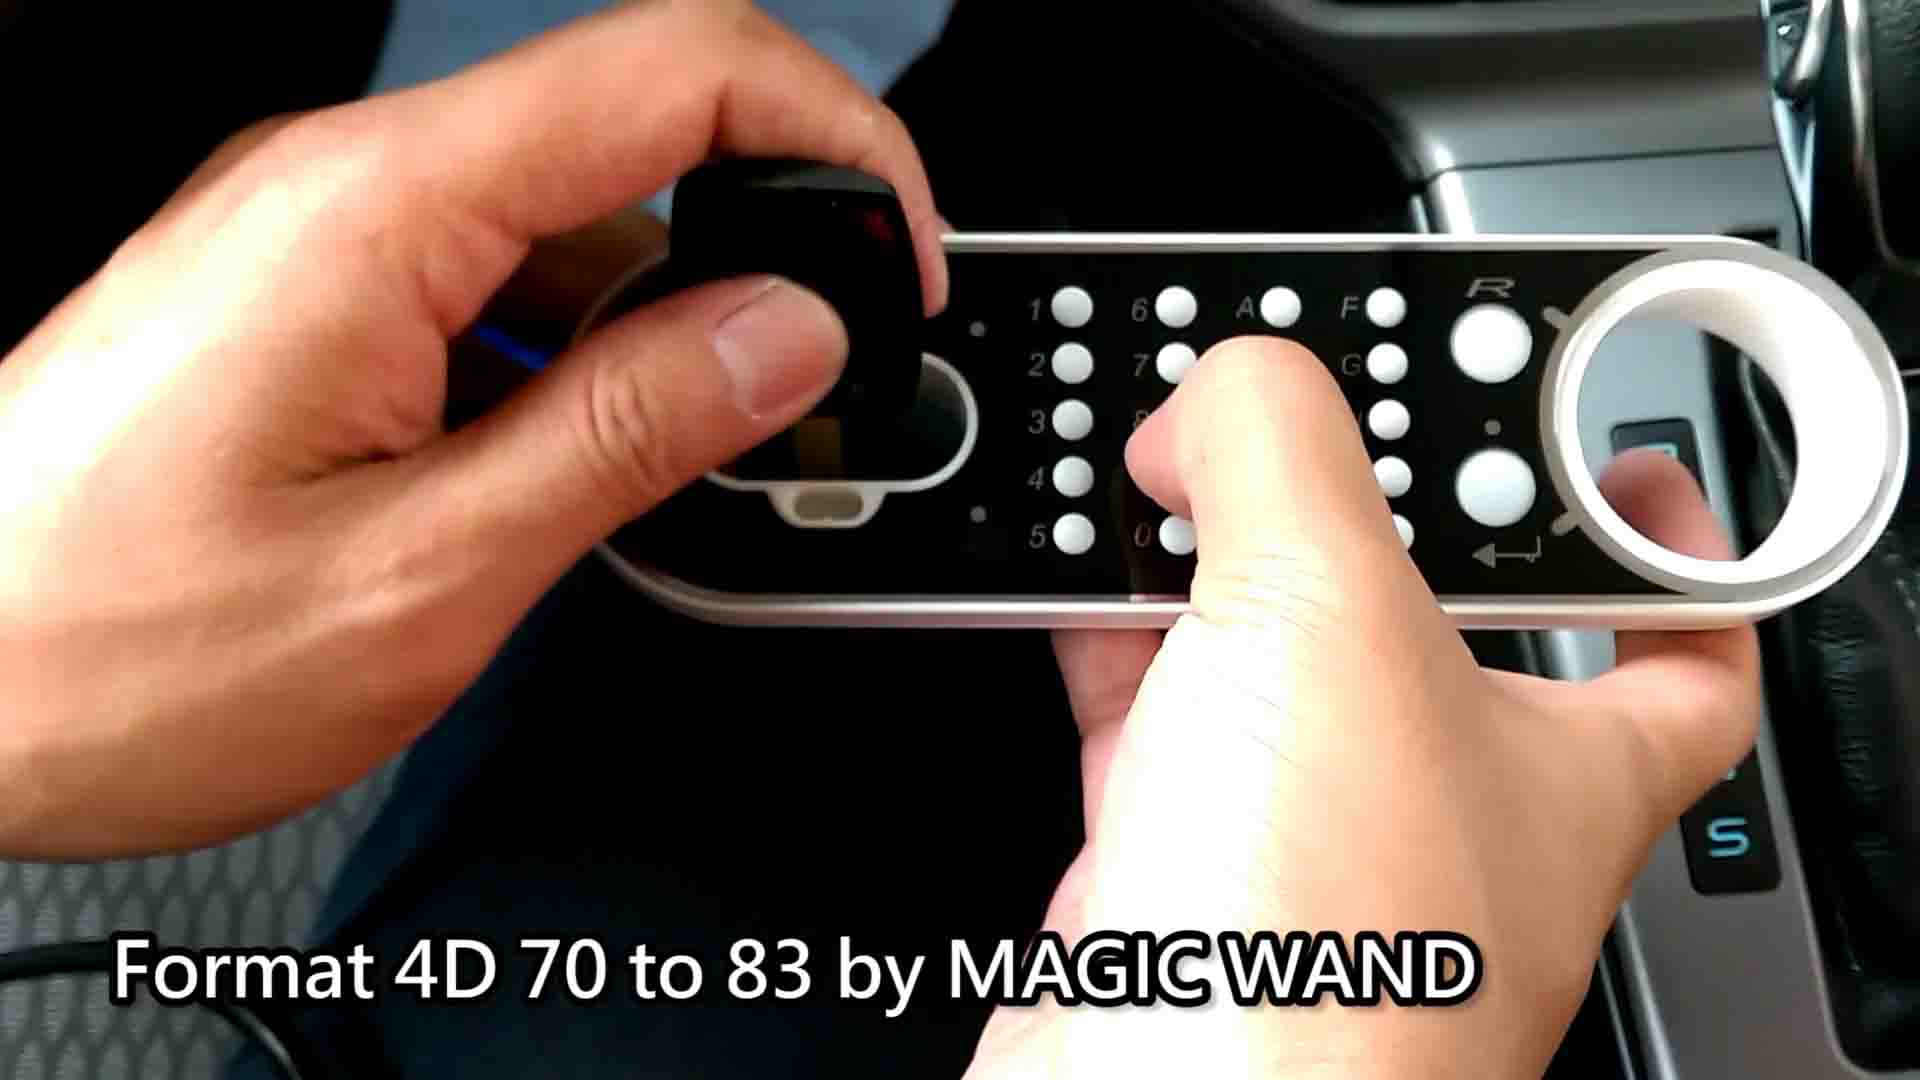 magic-wand-key-programming-6